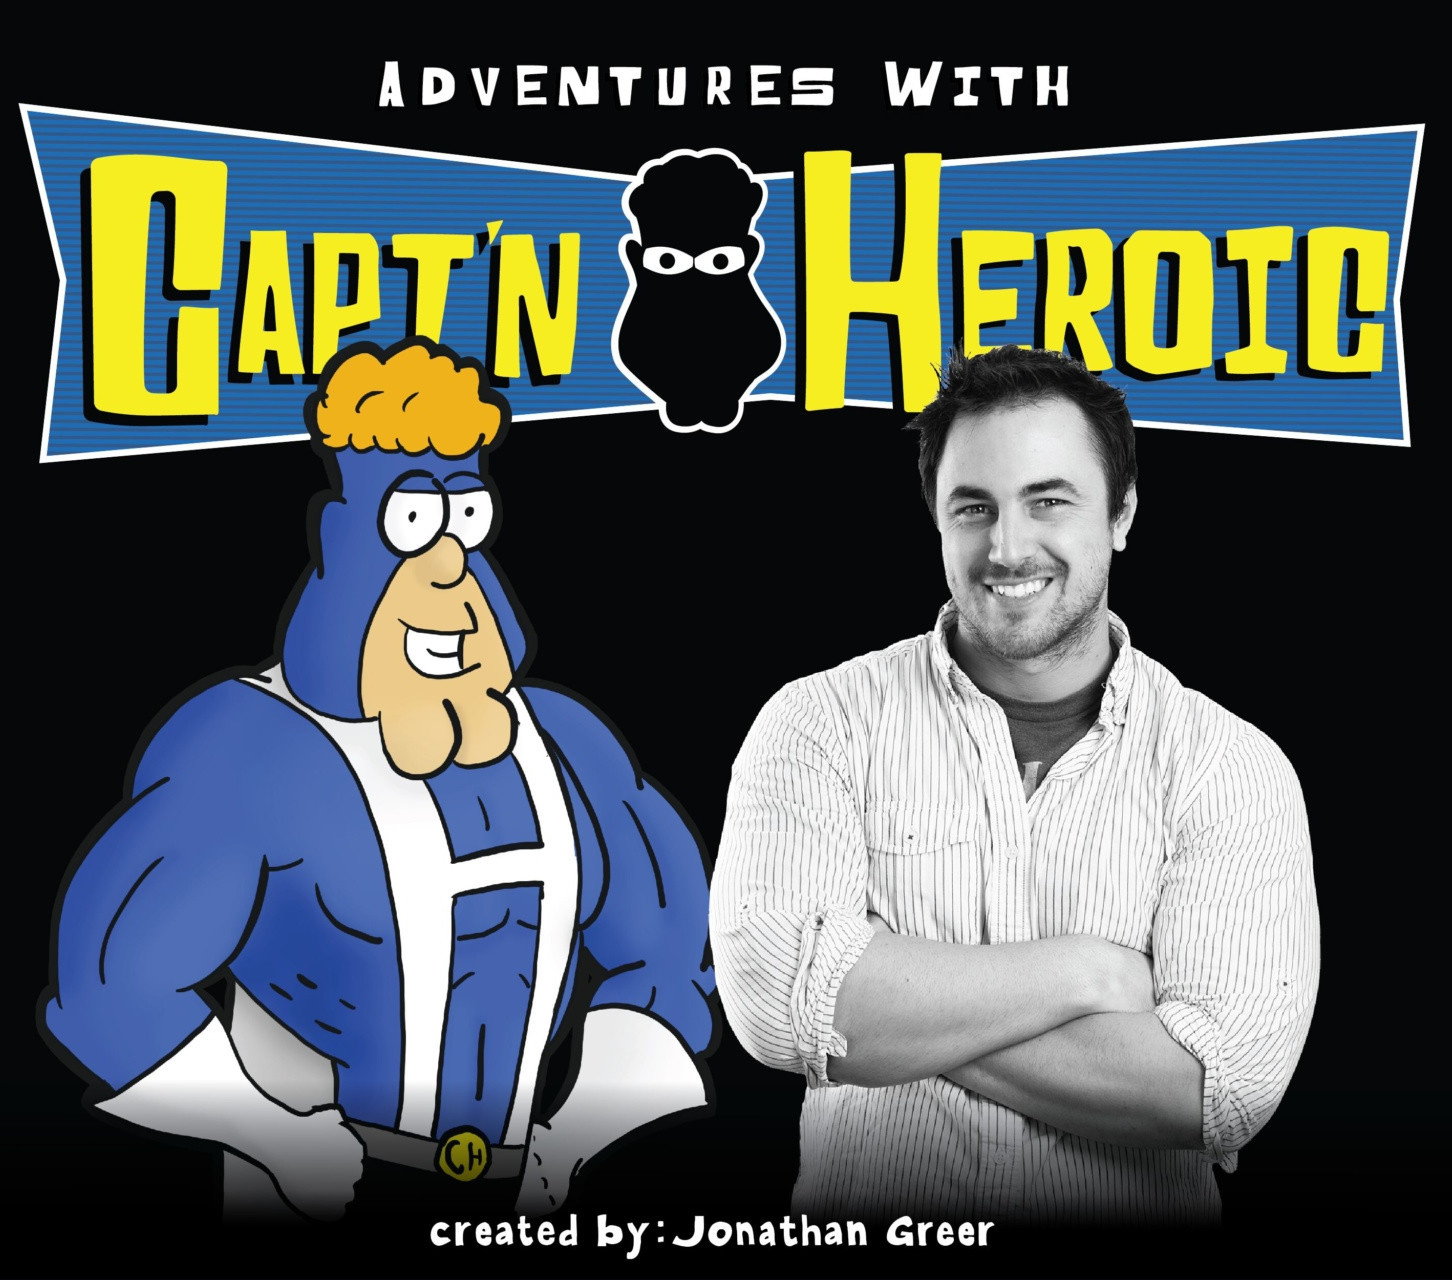 Adventures with Capt’n Heroic: Jonathan Greer Unmasked !